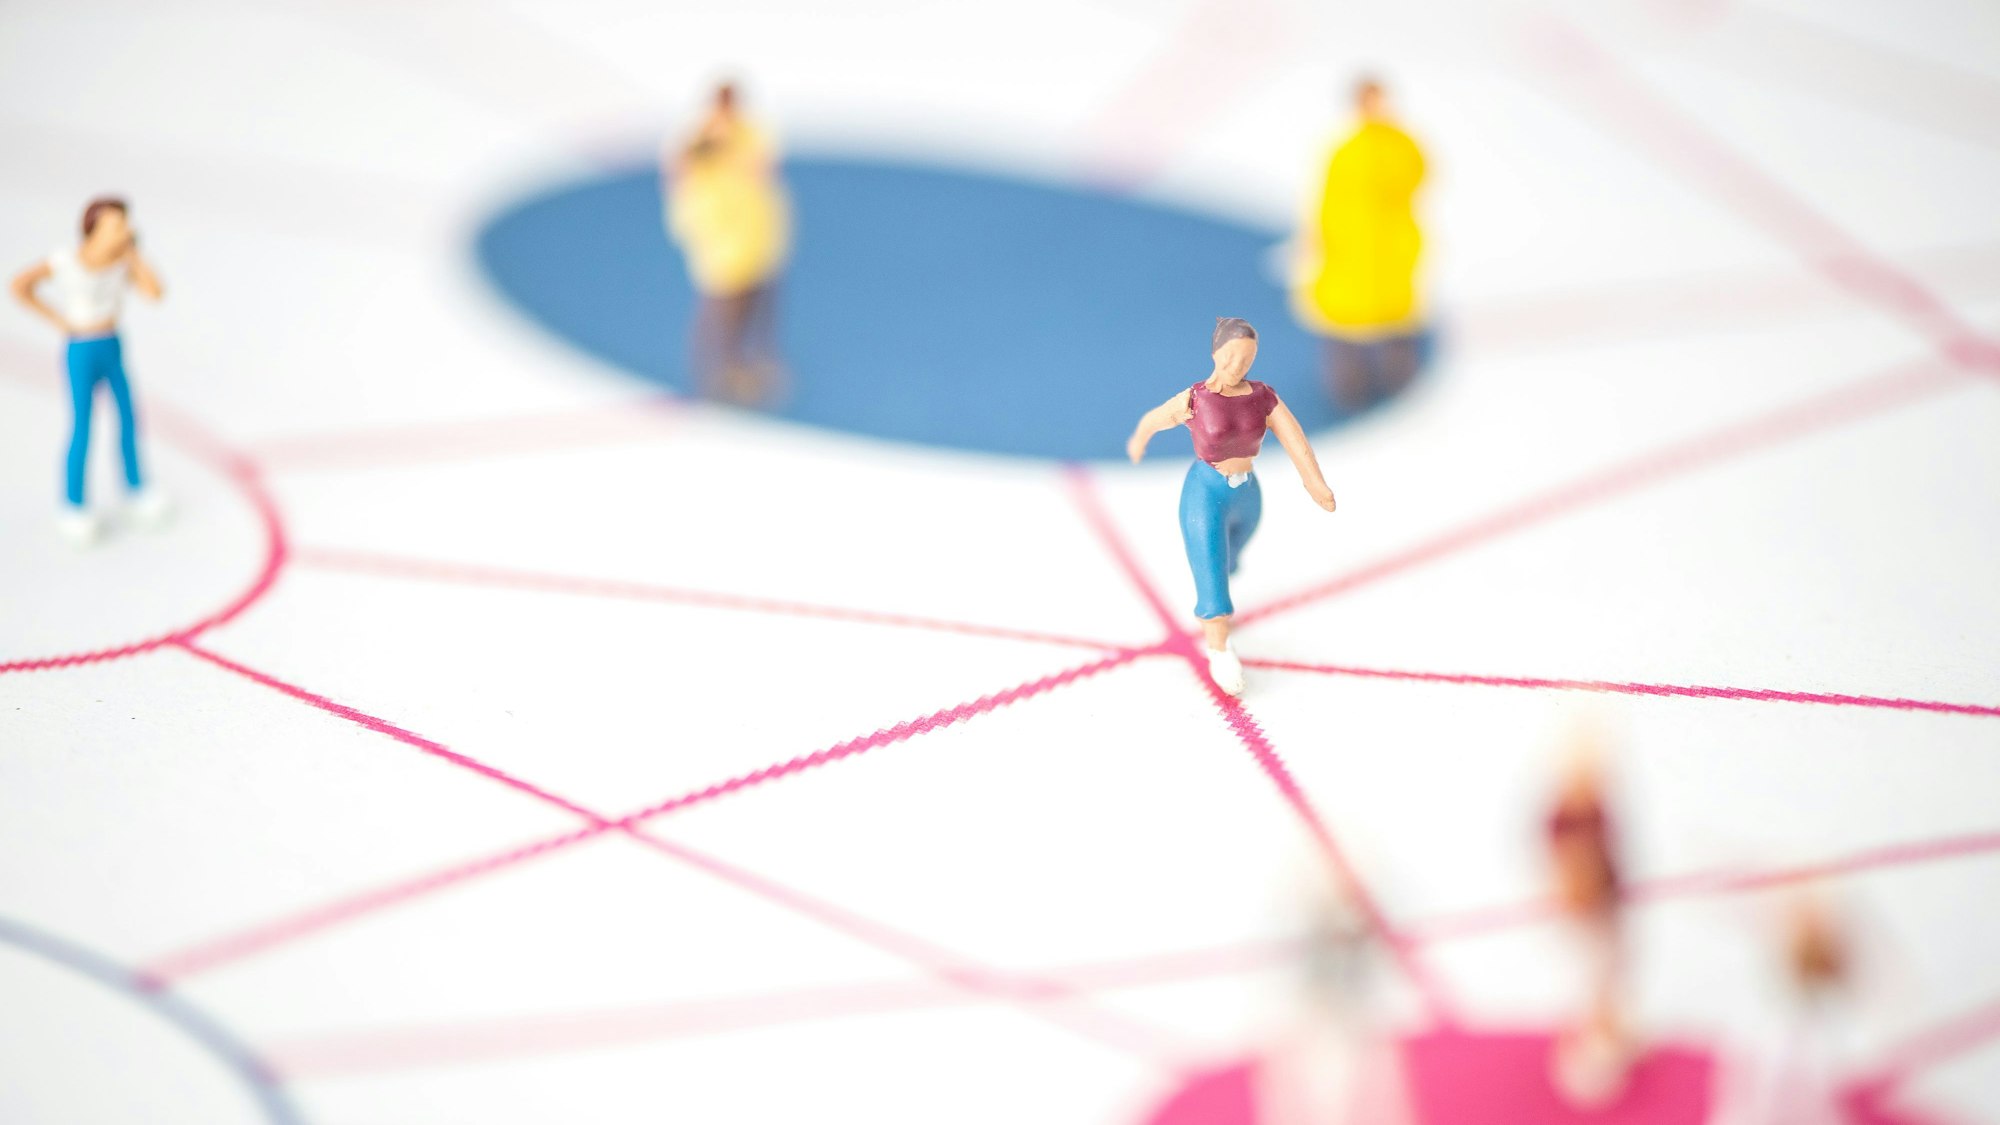 Weibliche Spielfiguren stehen auf verschiedenen Positionen in einem Netz